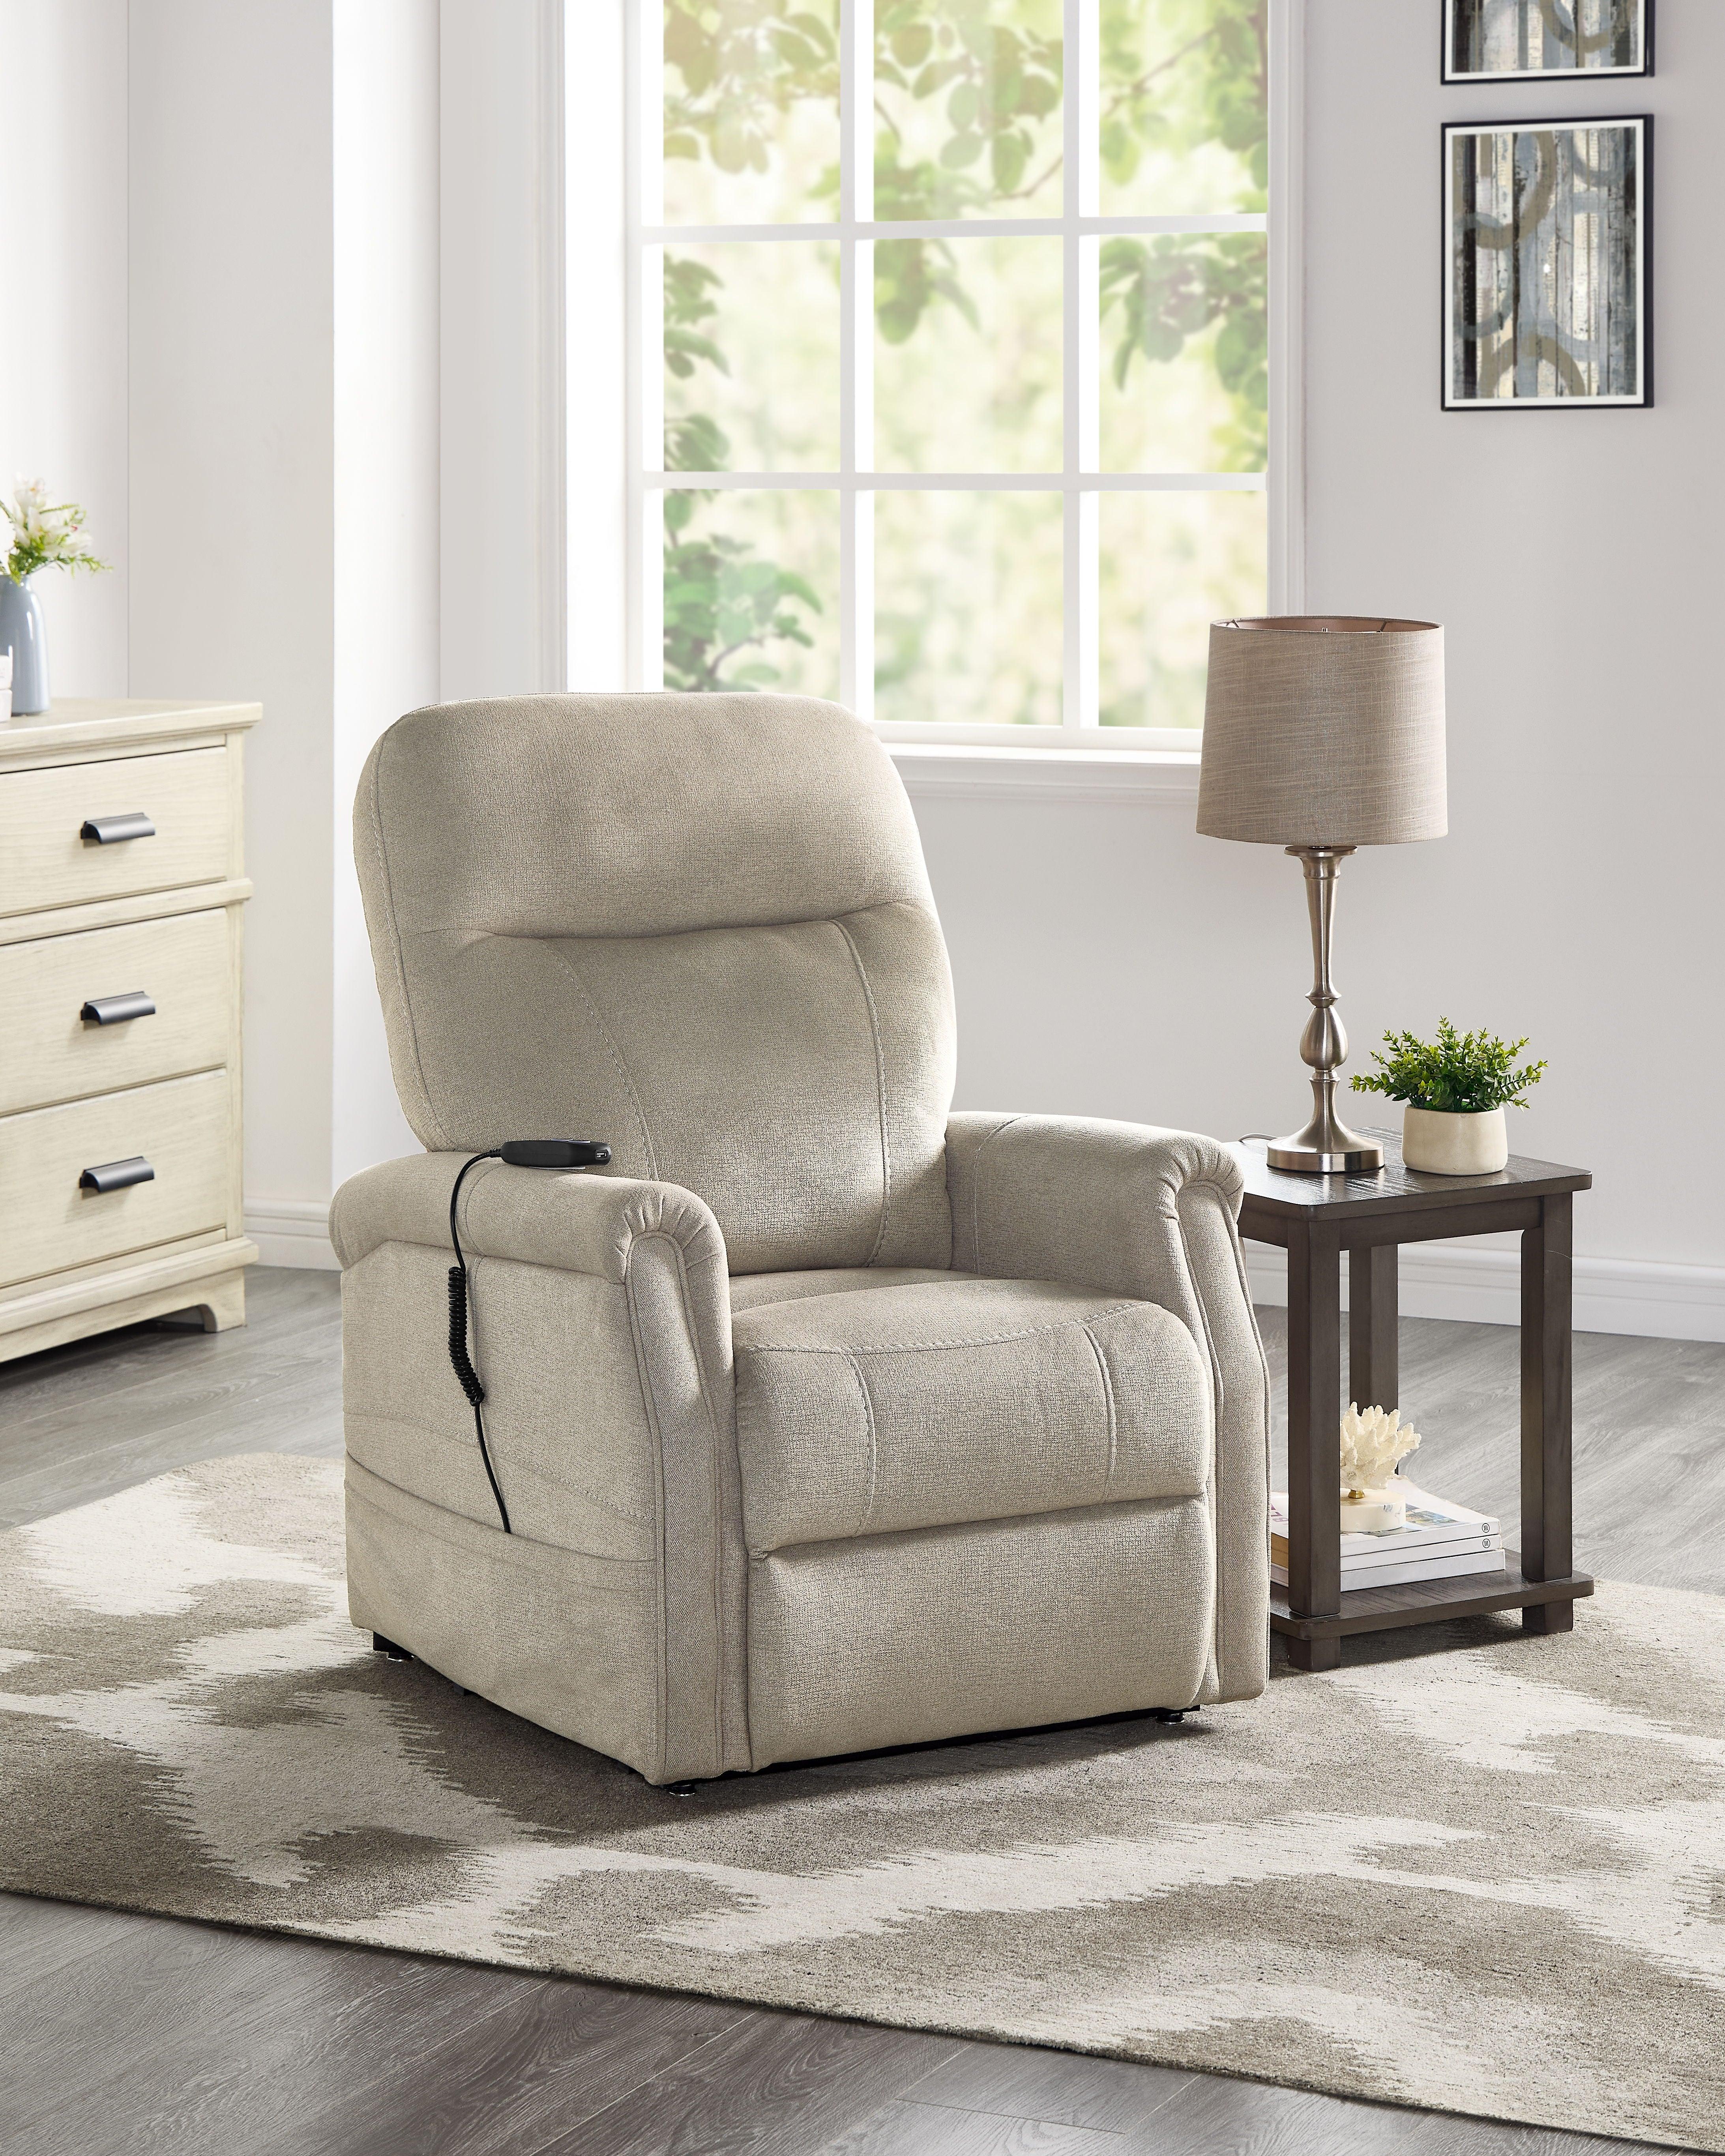 Steve Silver Furniture - Rhodes - Power Lift Chair - Tan - 5th Avenue Furniture